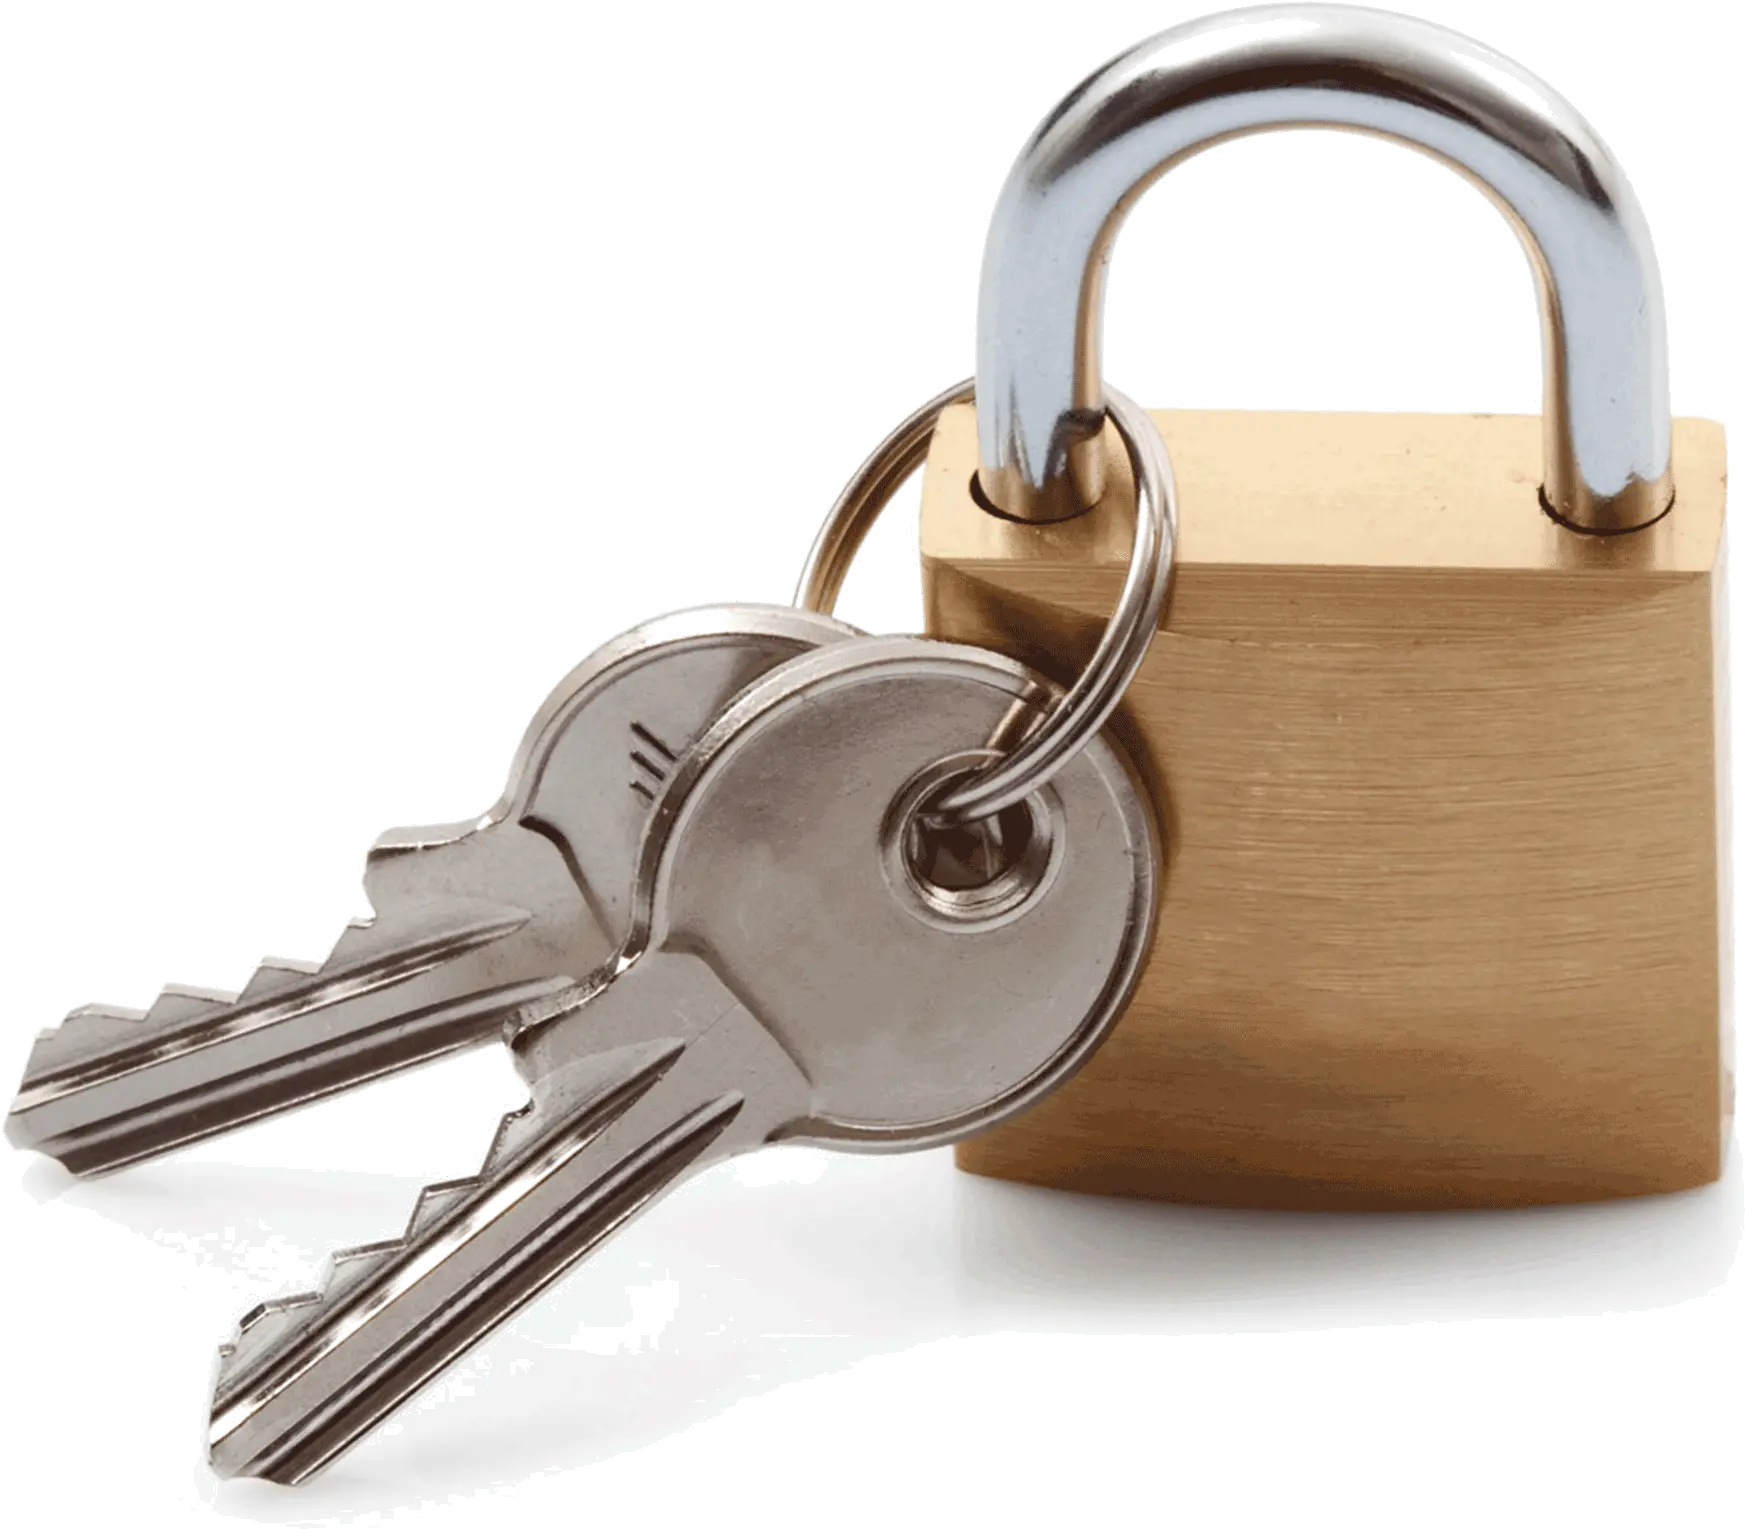 Download Hd Jar Transparent Lock Transparent Lock And Key Png Lock And Key Png